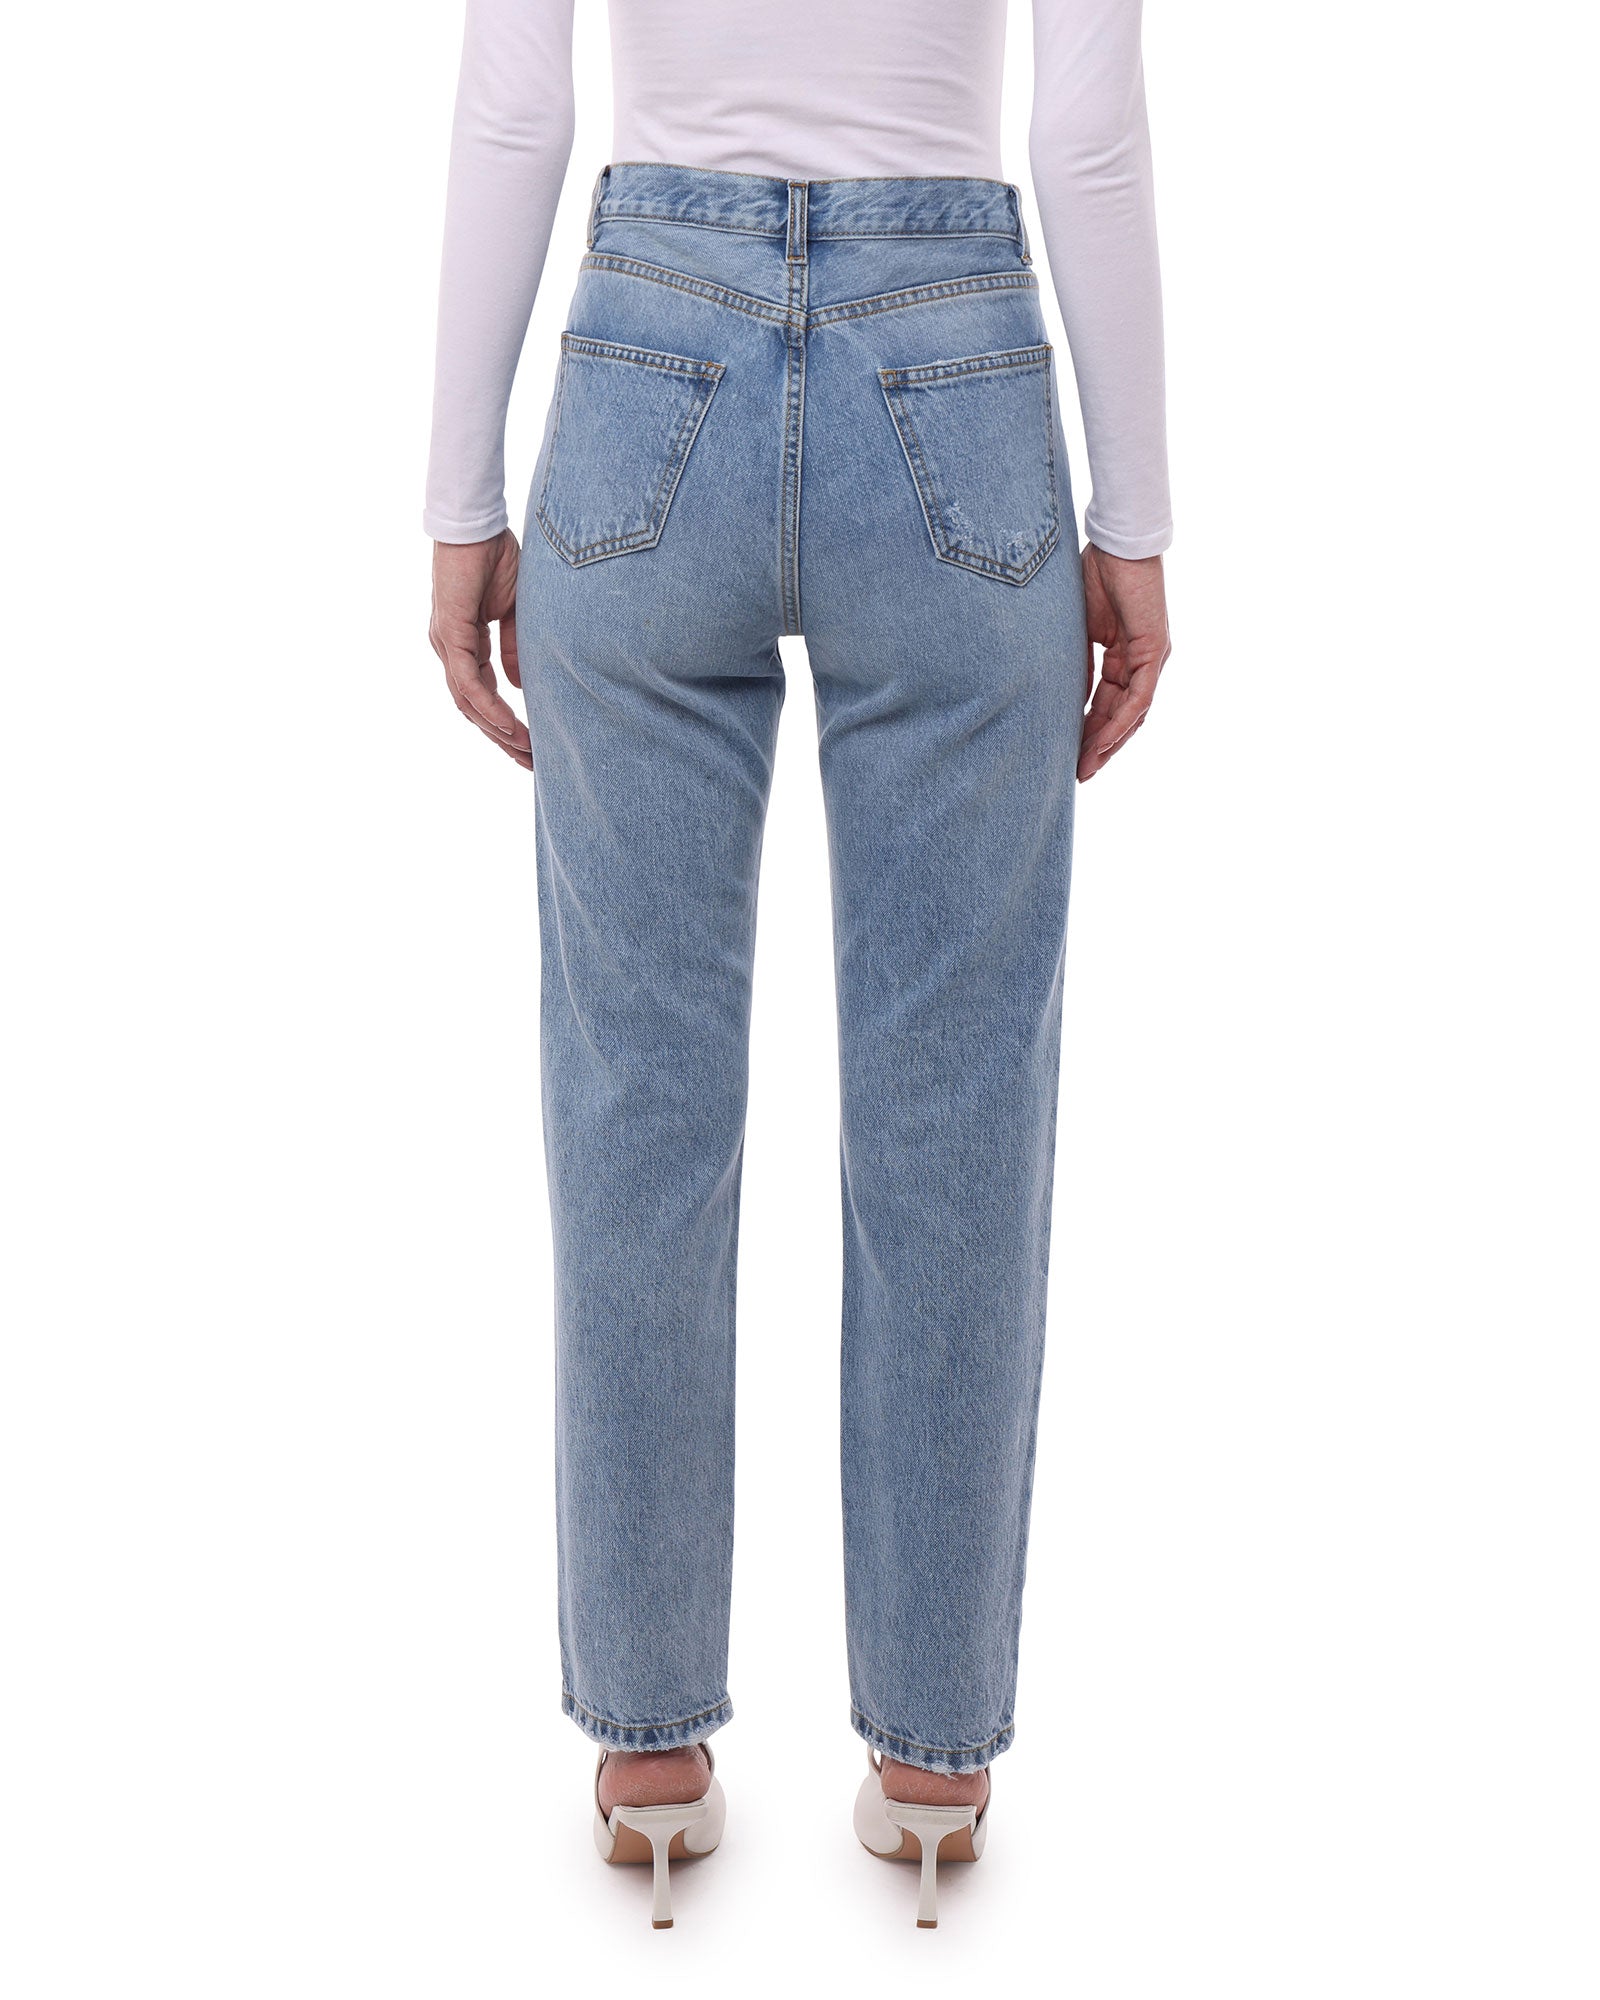 Jeans Donna in Cotone Organico (Taper - Chiaro)